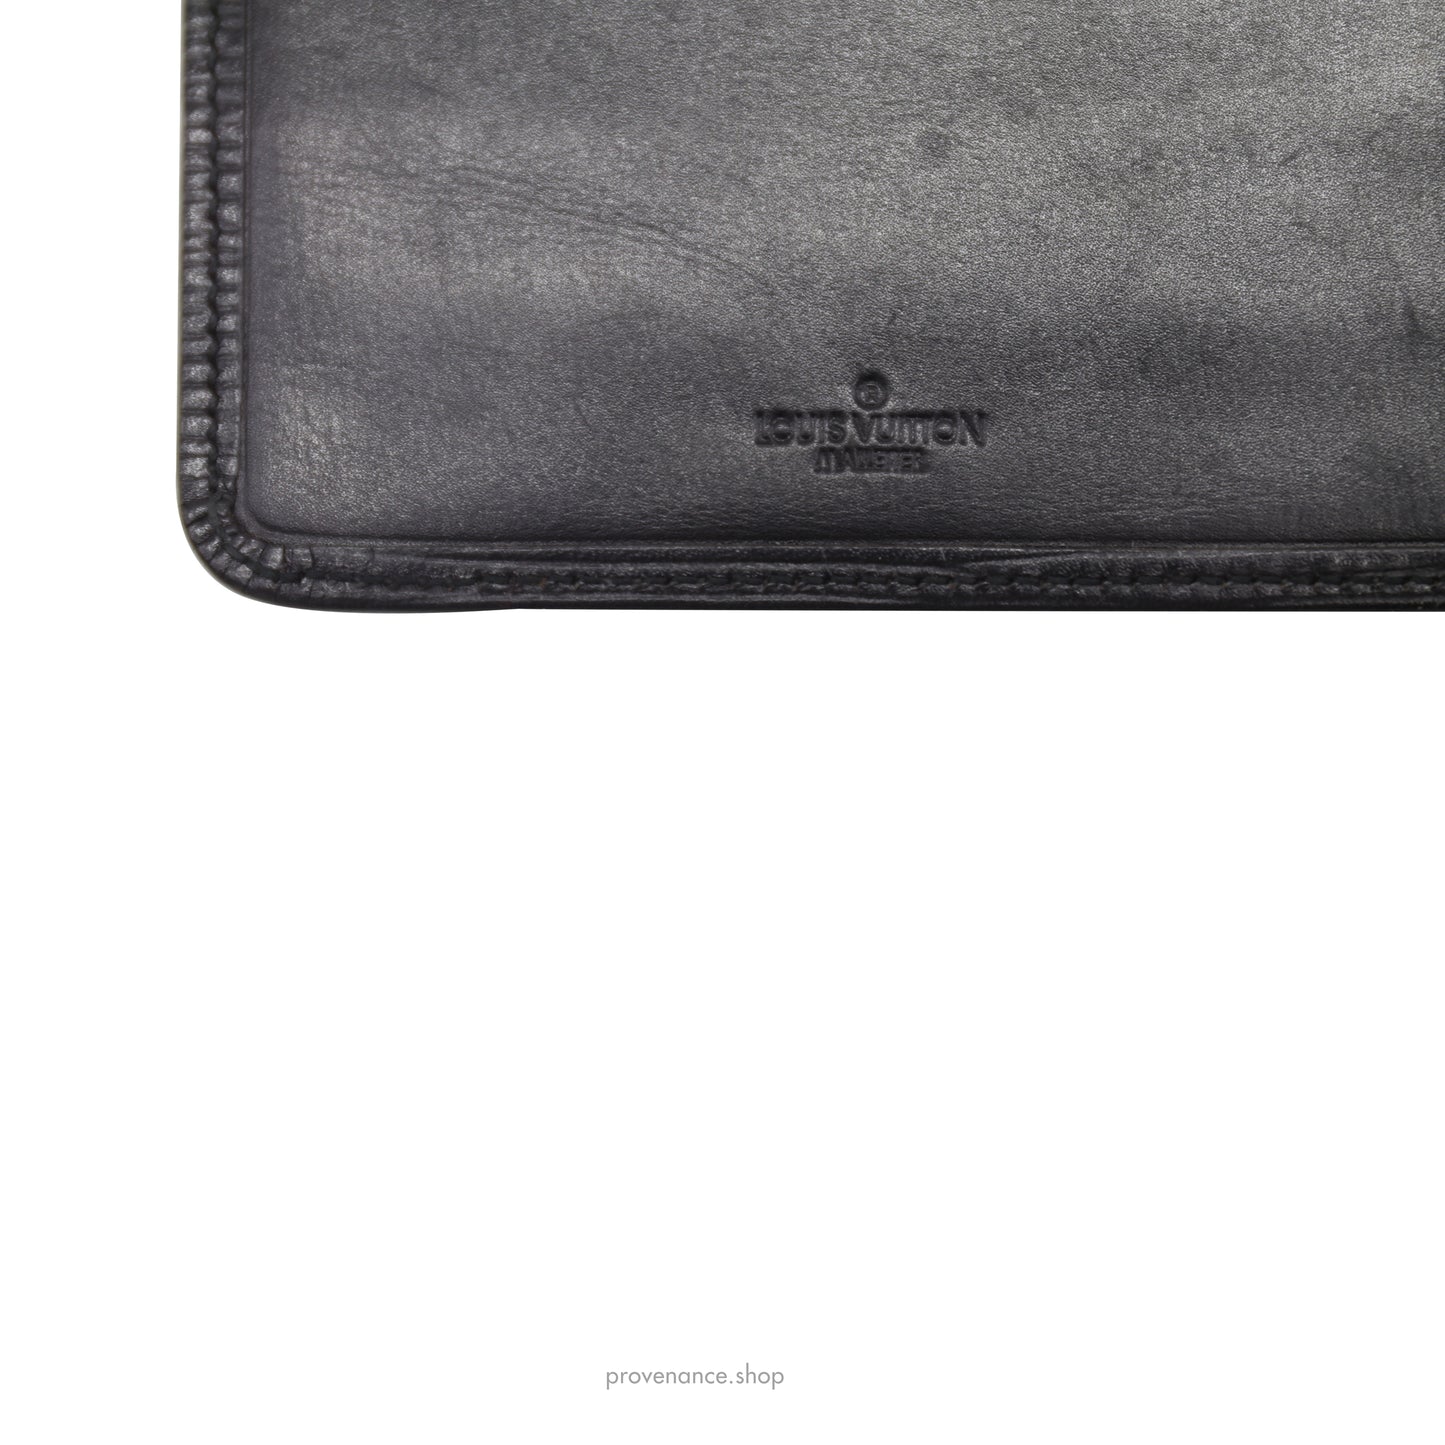 Louis Vuitton "MALLETIER" Long Wallet - Black Epi Noir Leather